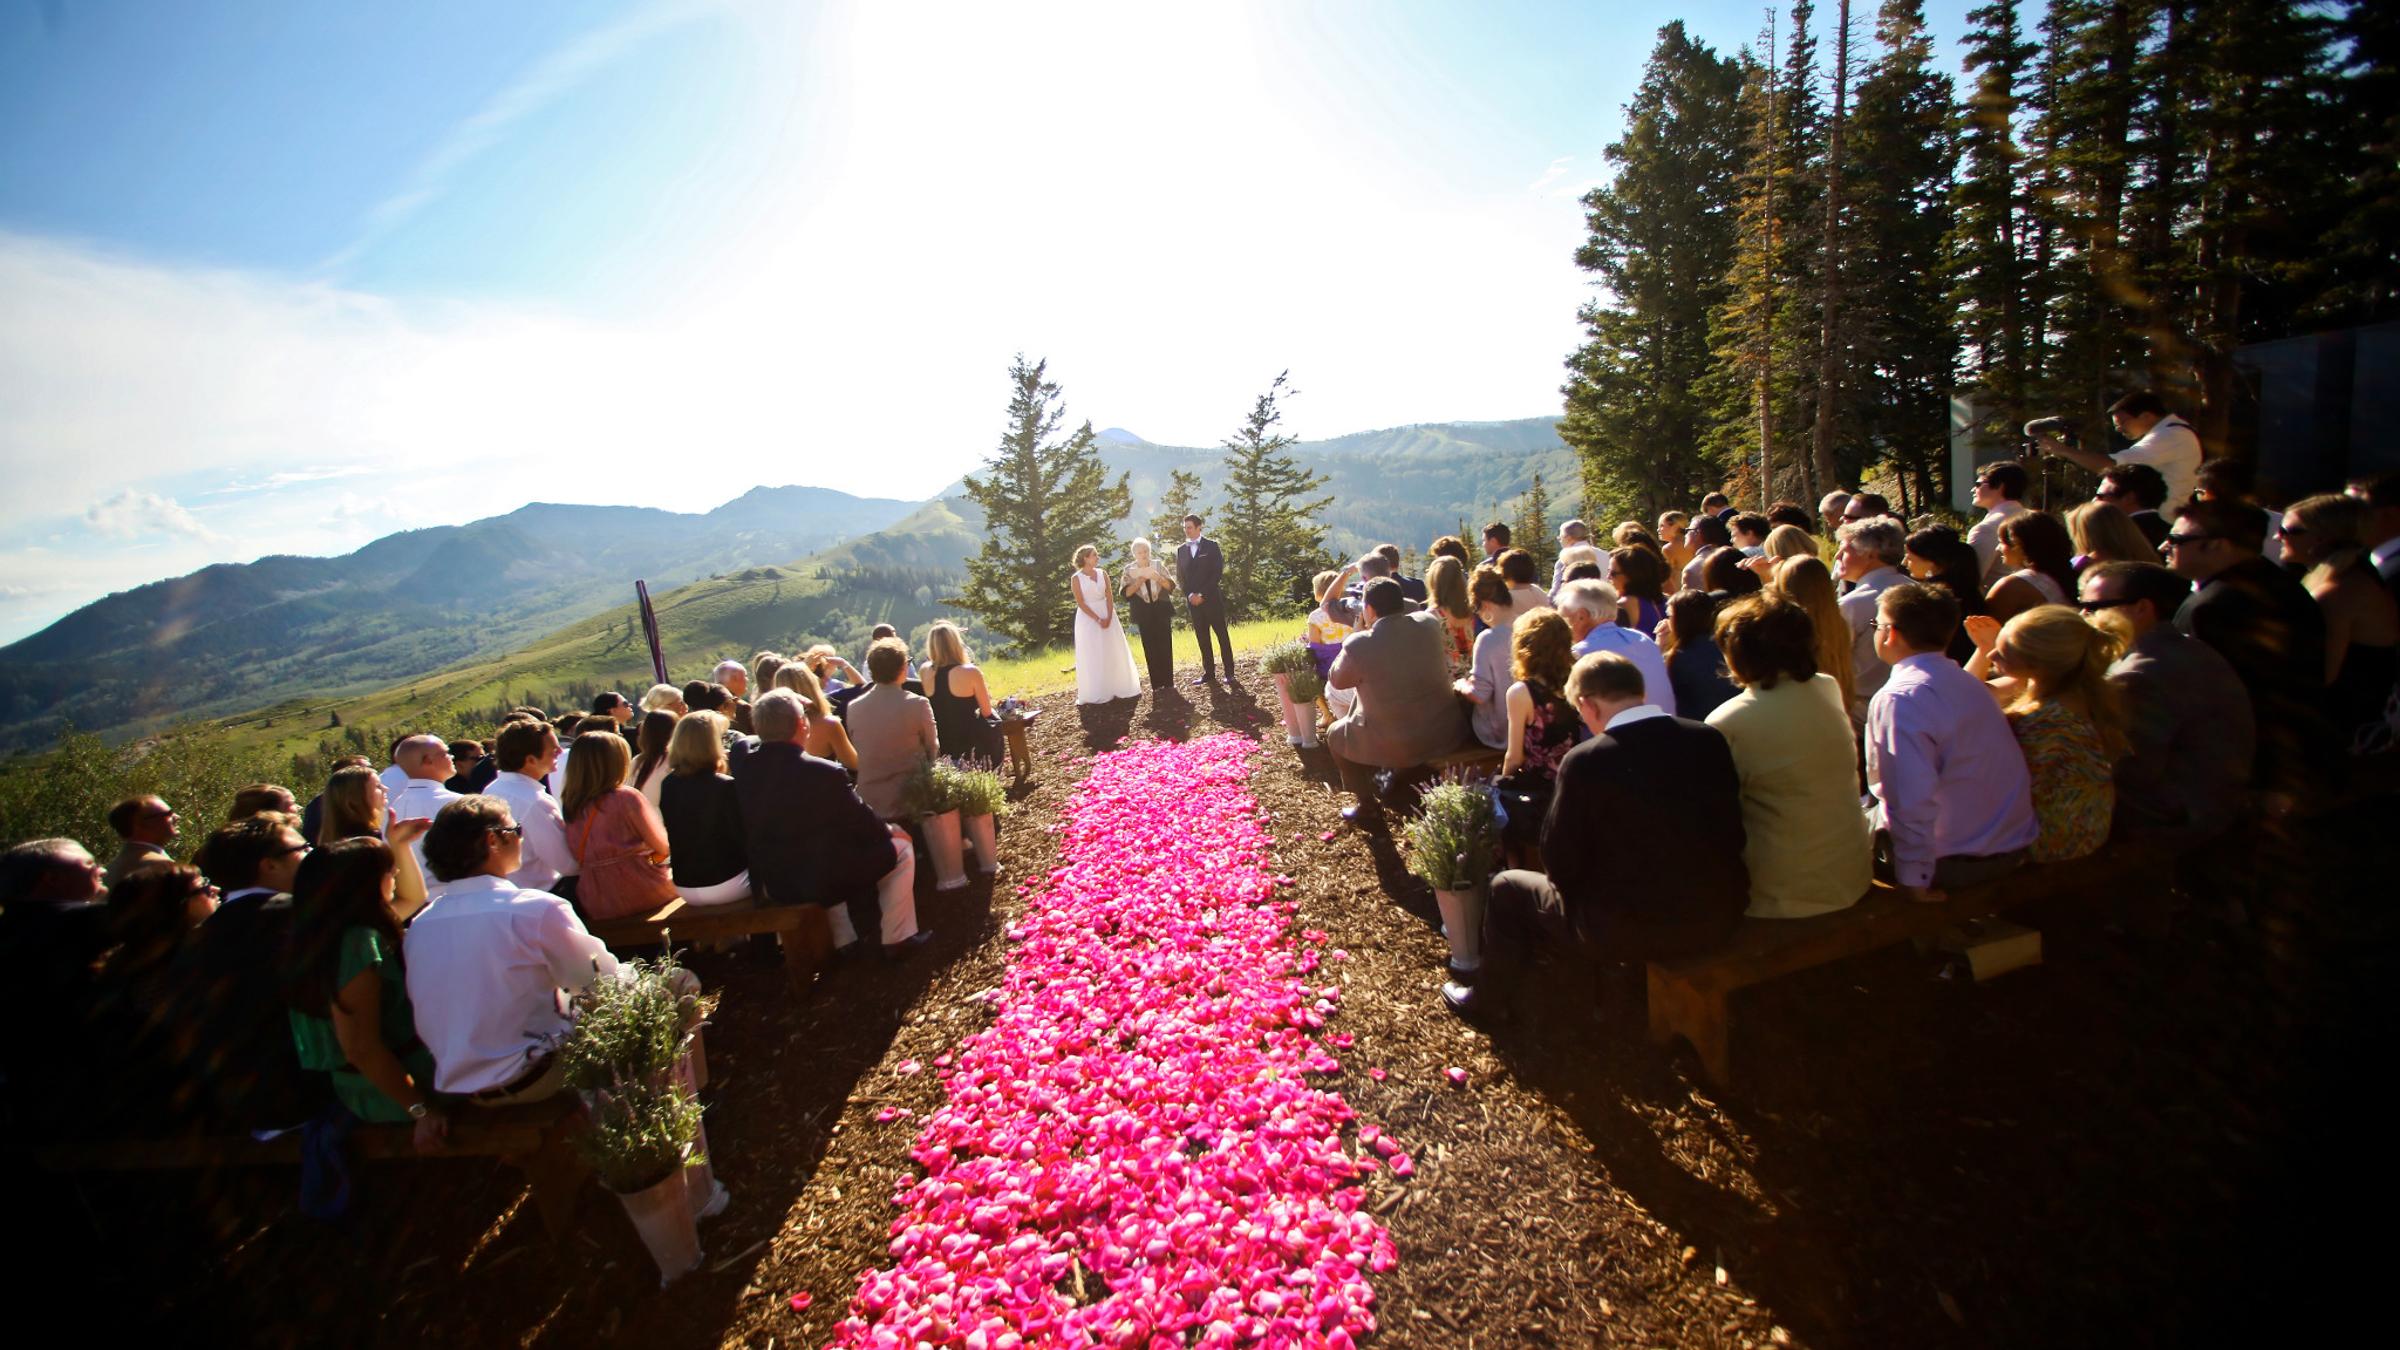 Cushings Cabin wedding at Deer Valley Resort